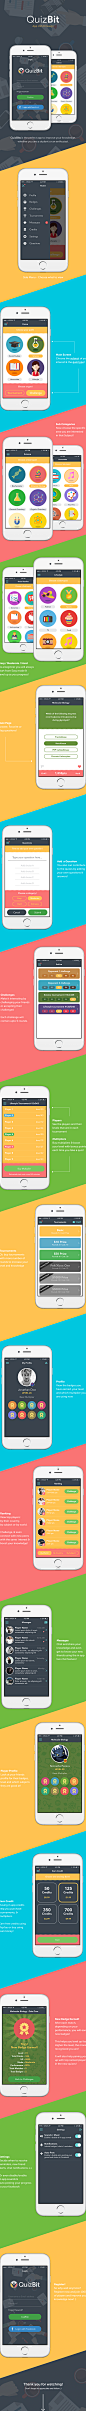 QuizBit | App UI Design : QuizBit App UI Design 